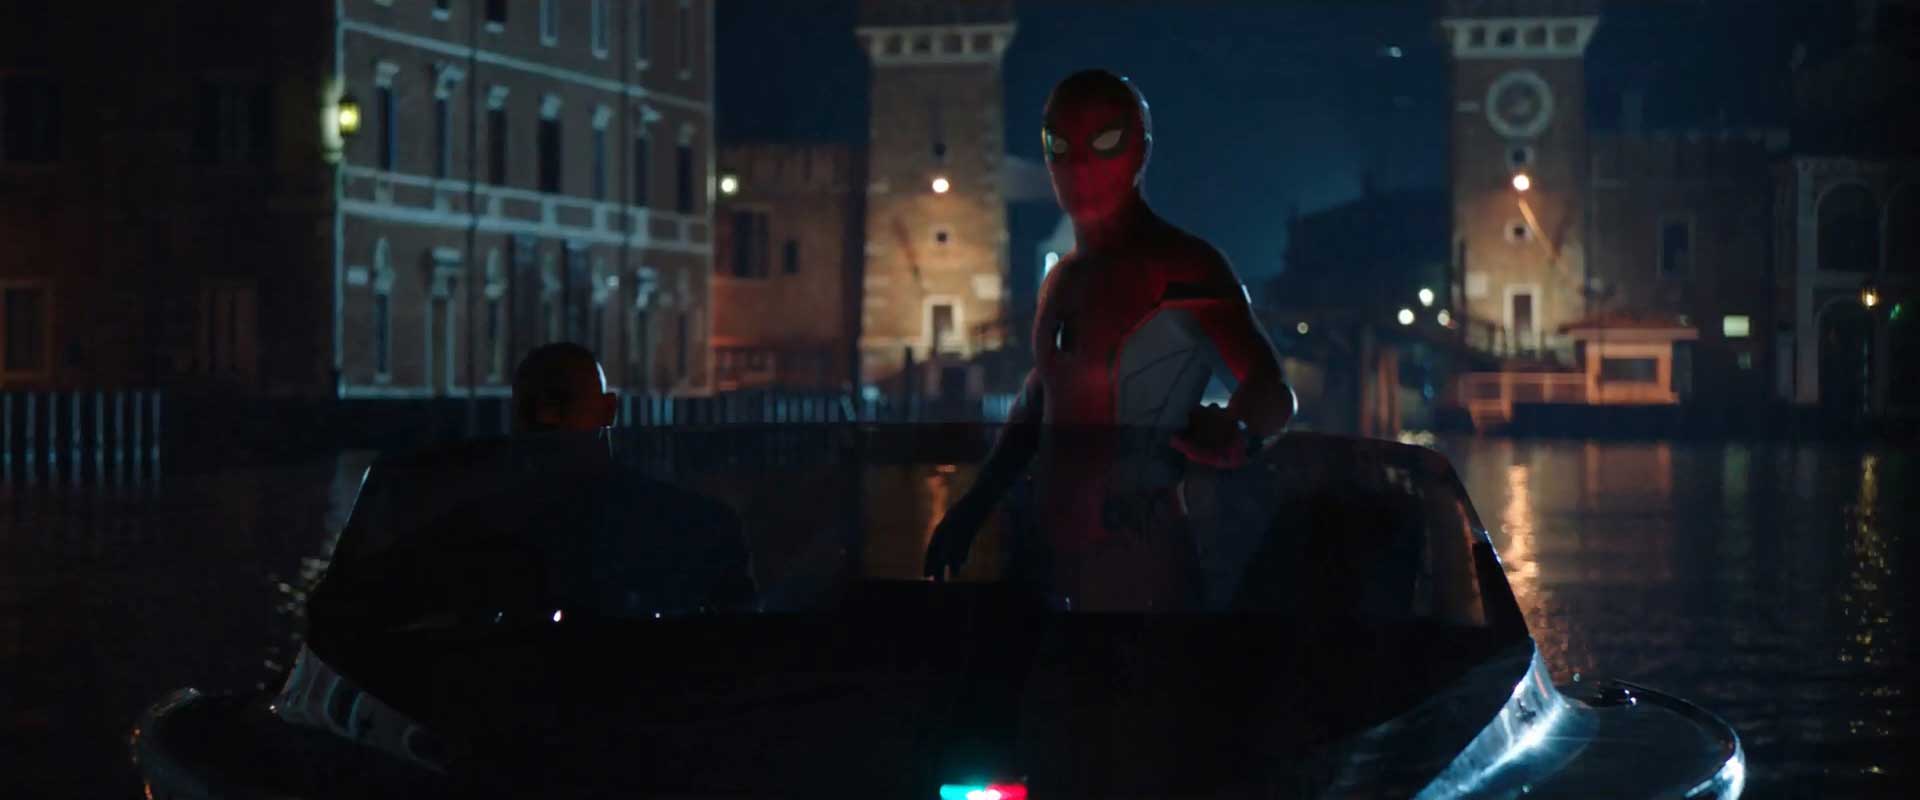 Spider-Man Far From Home Trailer 2 Breakdown - Stark Suit